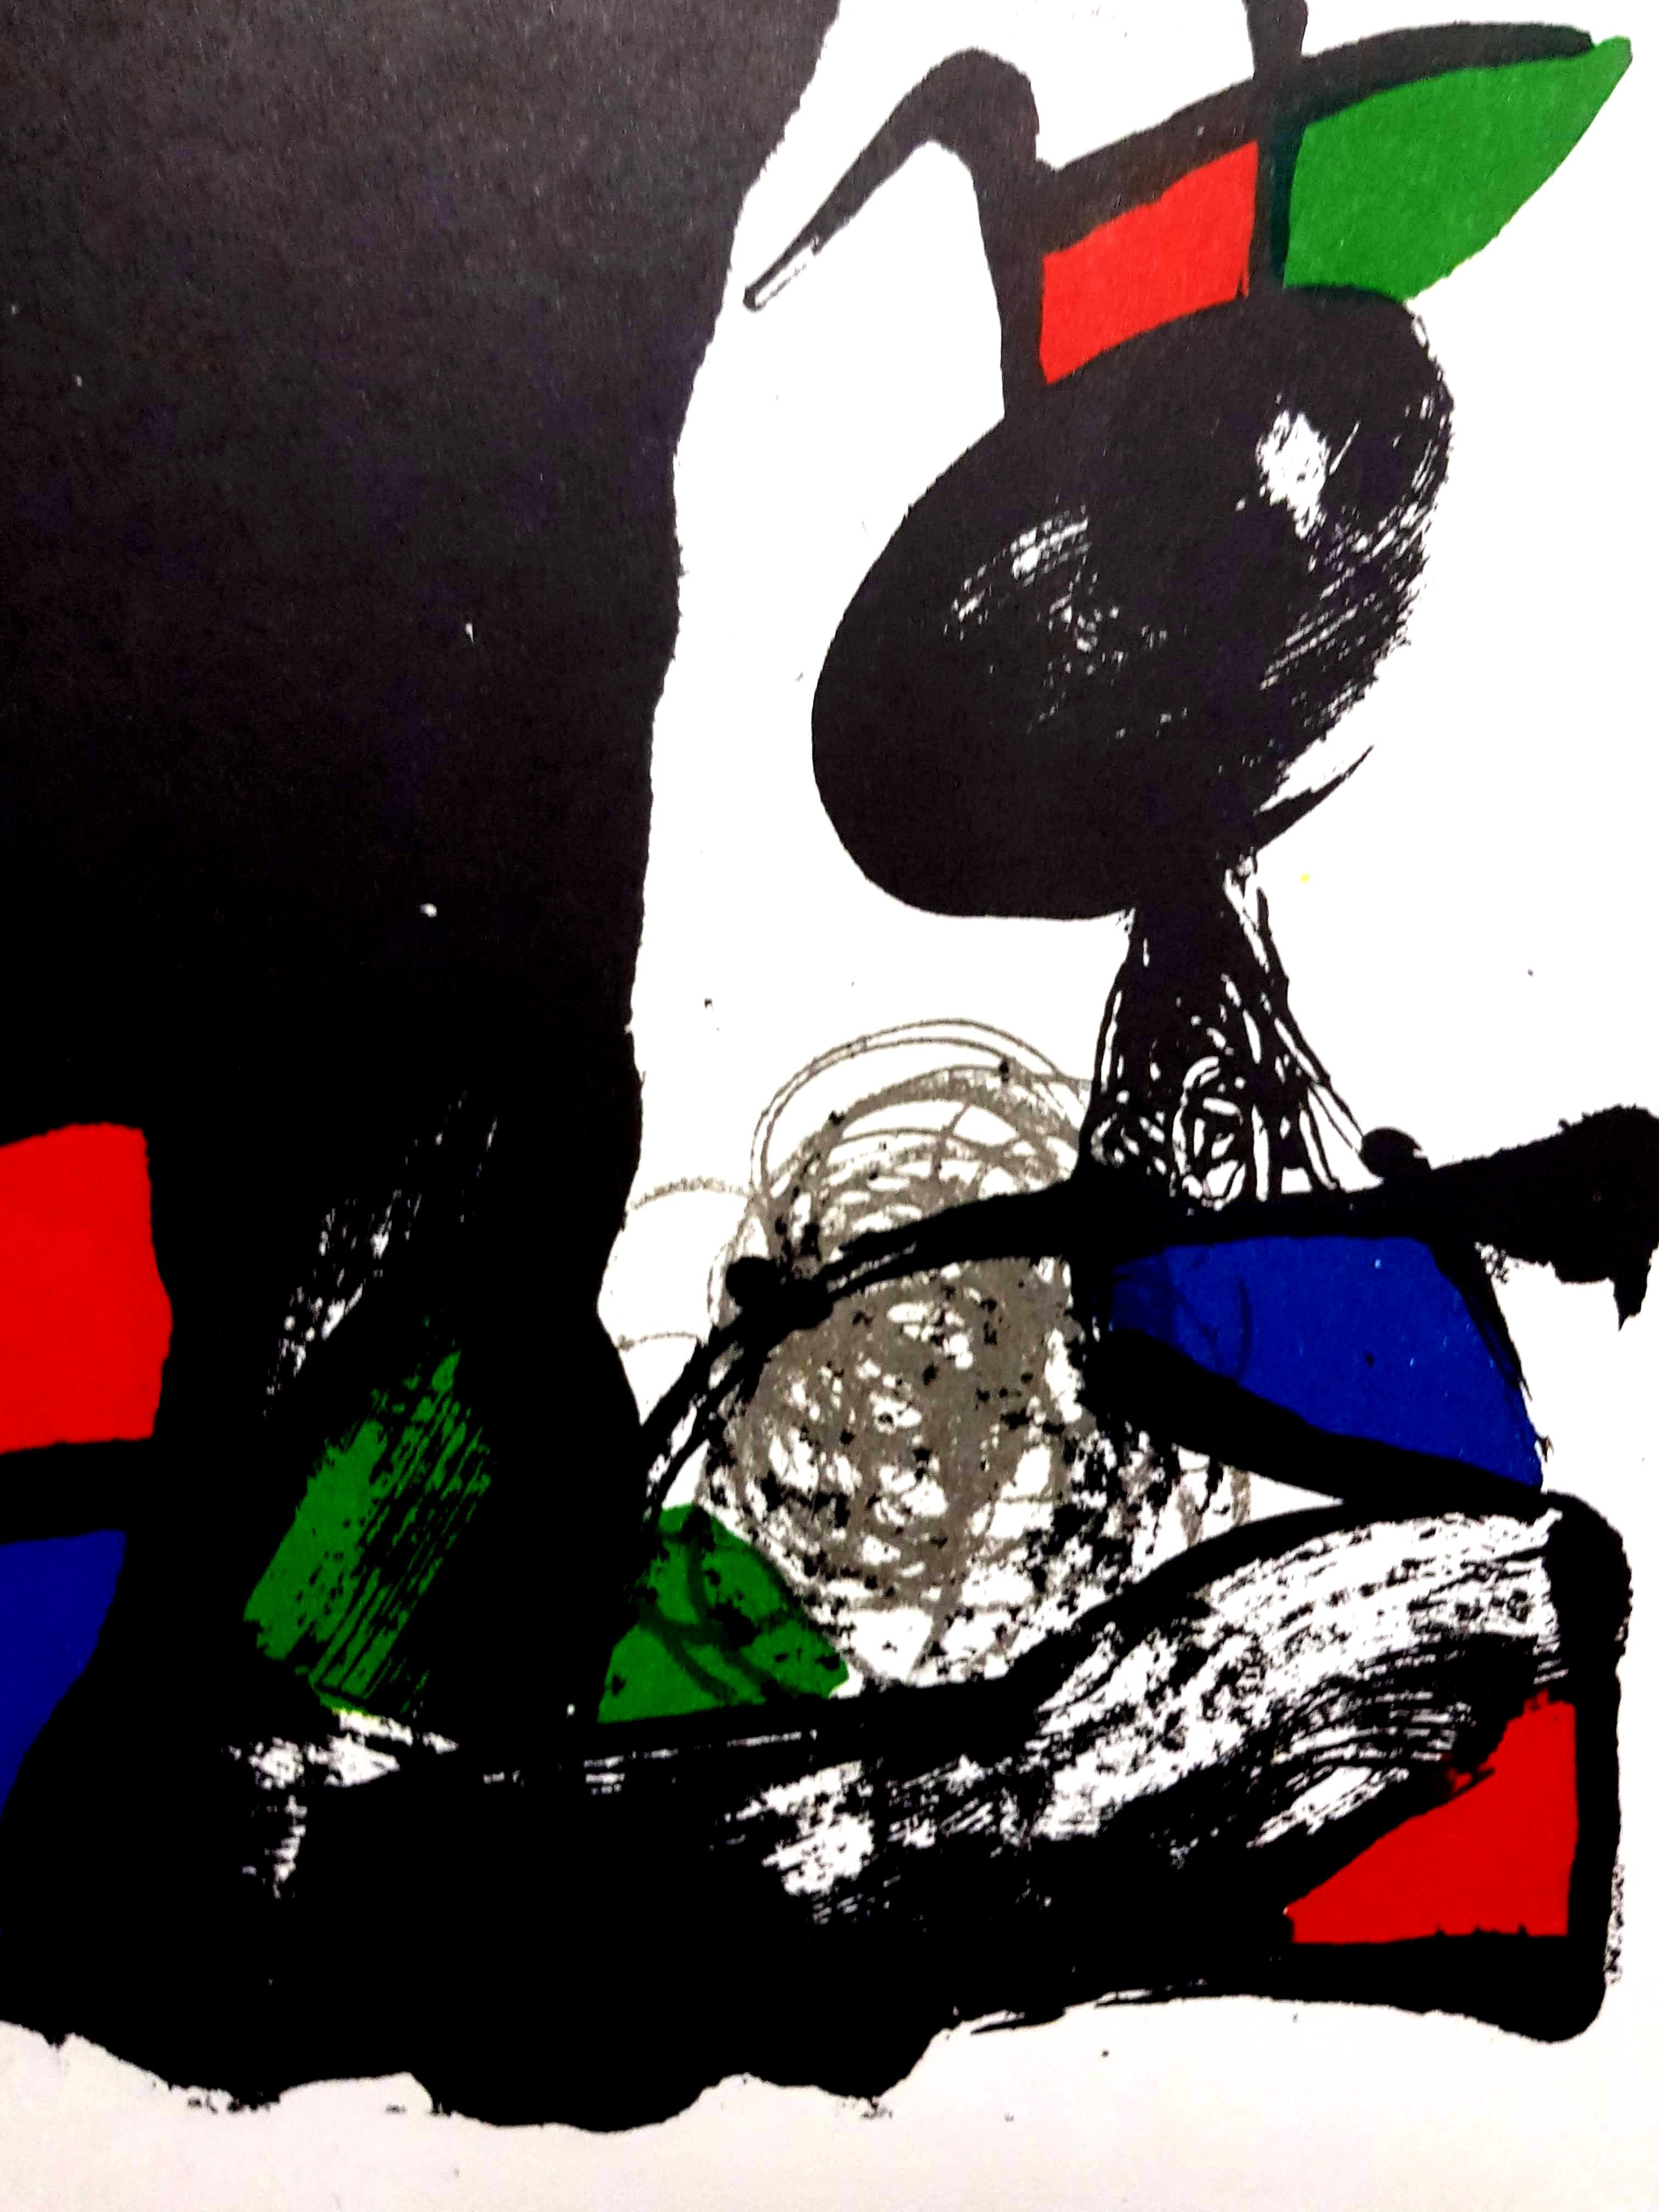 Joan Miro Miro Original Abstrakte Lithographie
Künstler: Joan Miro
Medium: Original-Lithographie auf Rives-Vellum
Mappe: Miro Lithographe IV
Jahr: 1981
Auflage: 150
Bildgröße: 10